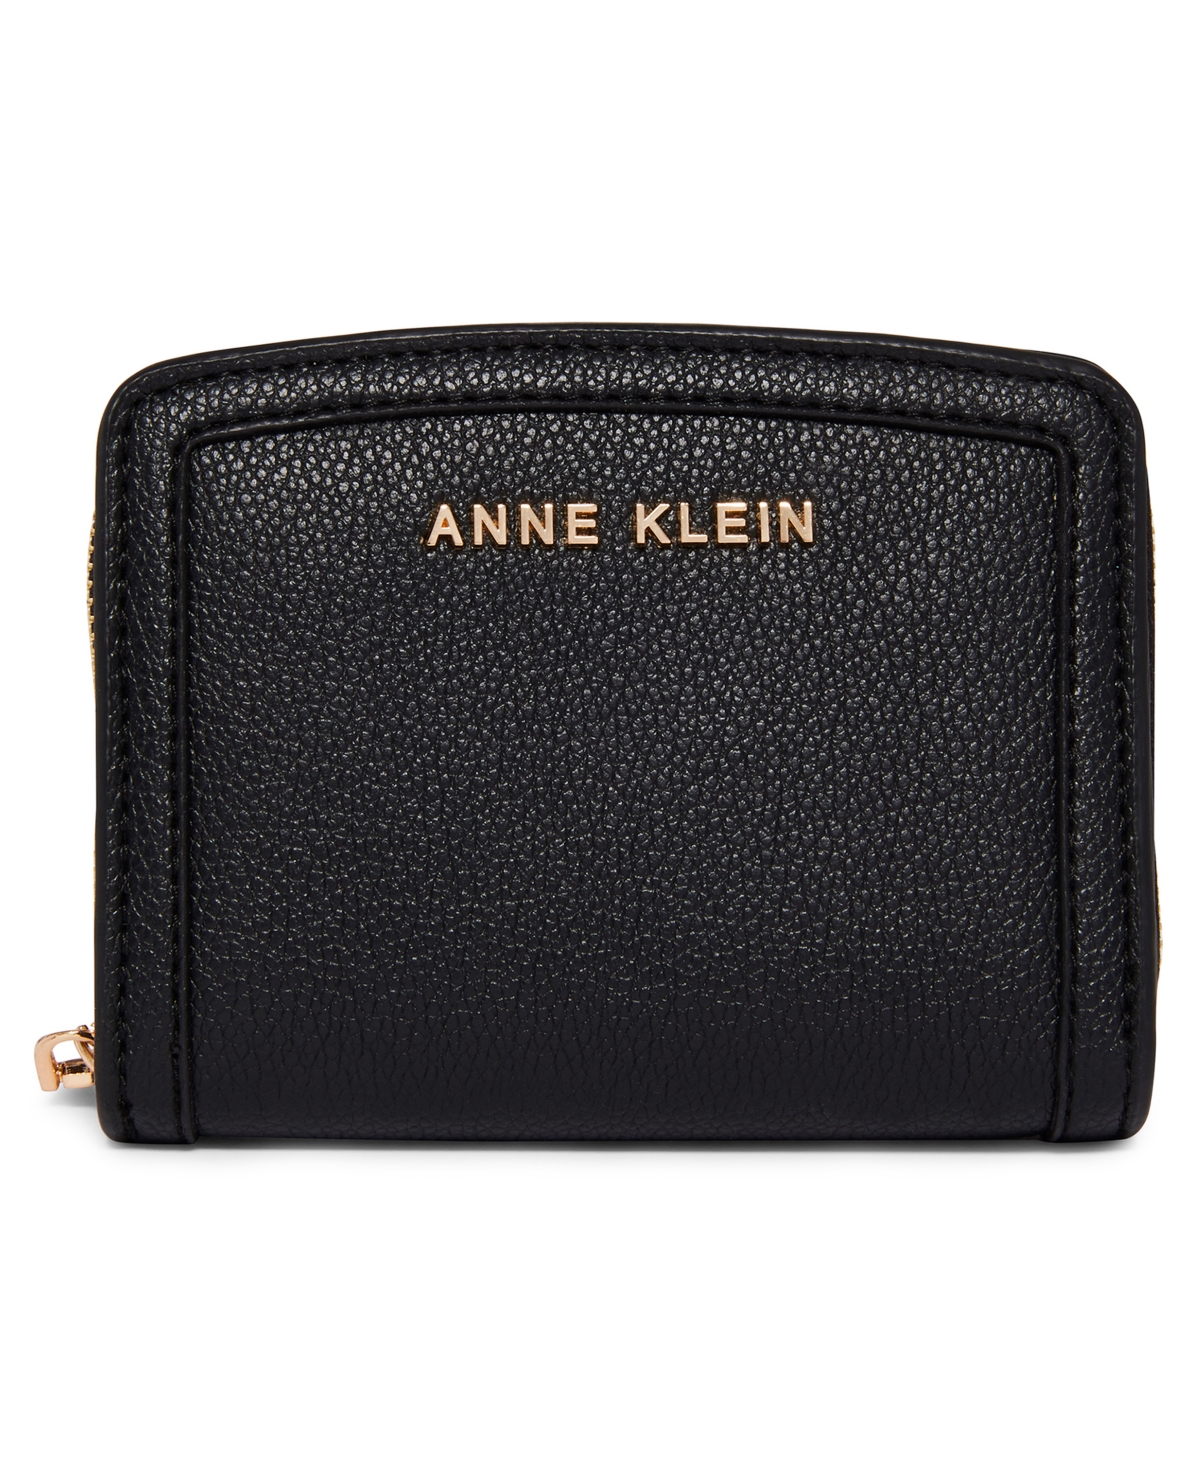 Anne Klein Women's Mini Colorblocked Wallet In Black